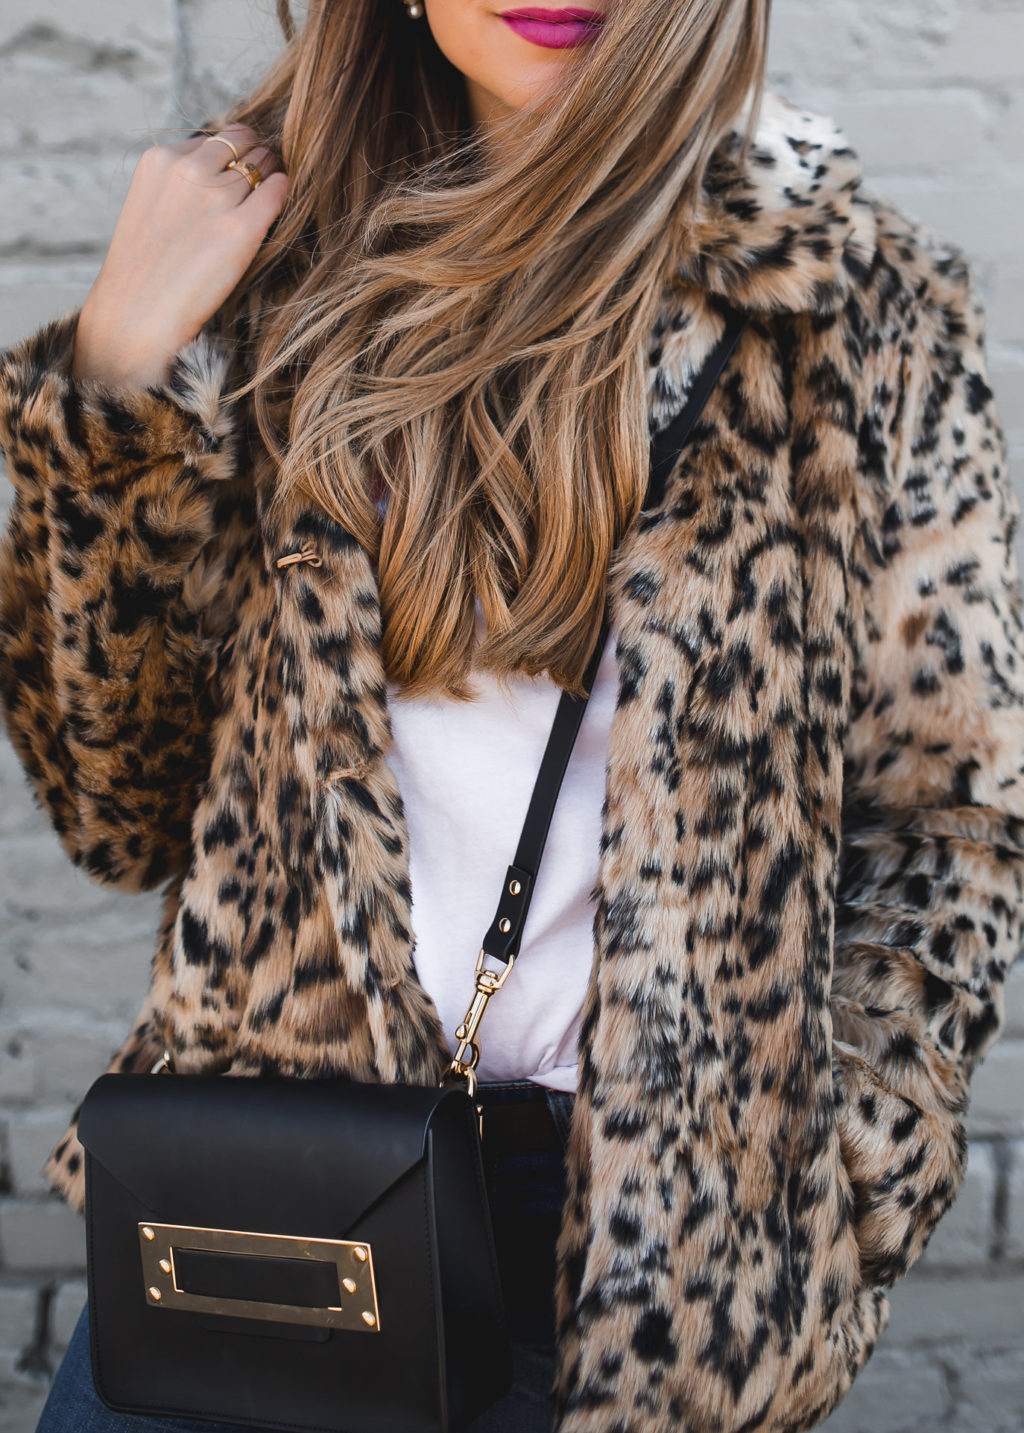 Leopard Coat Outfit 